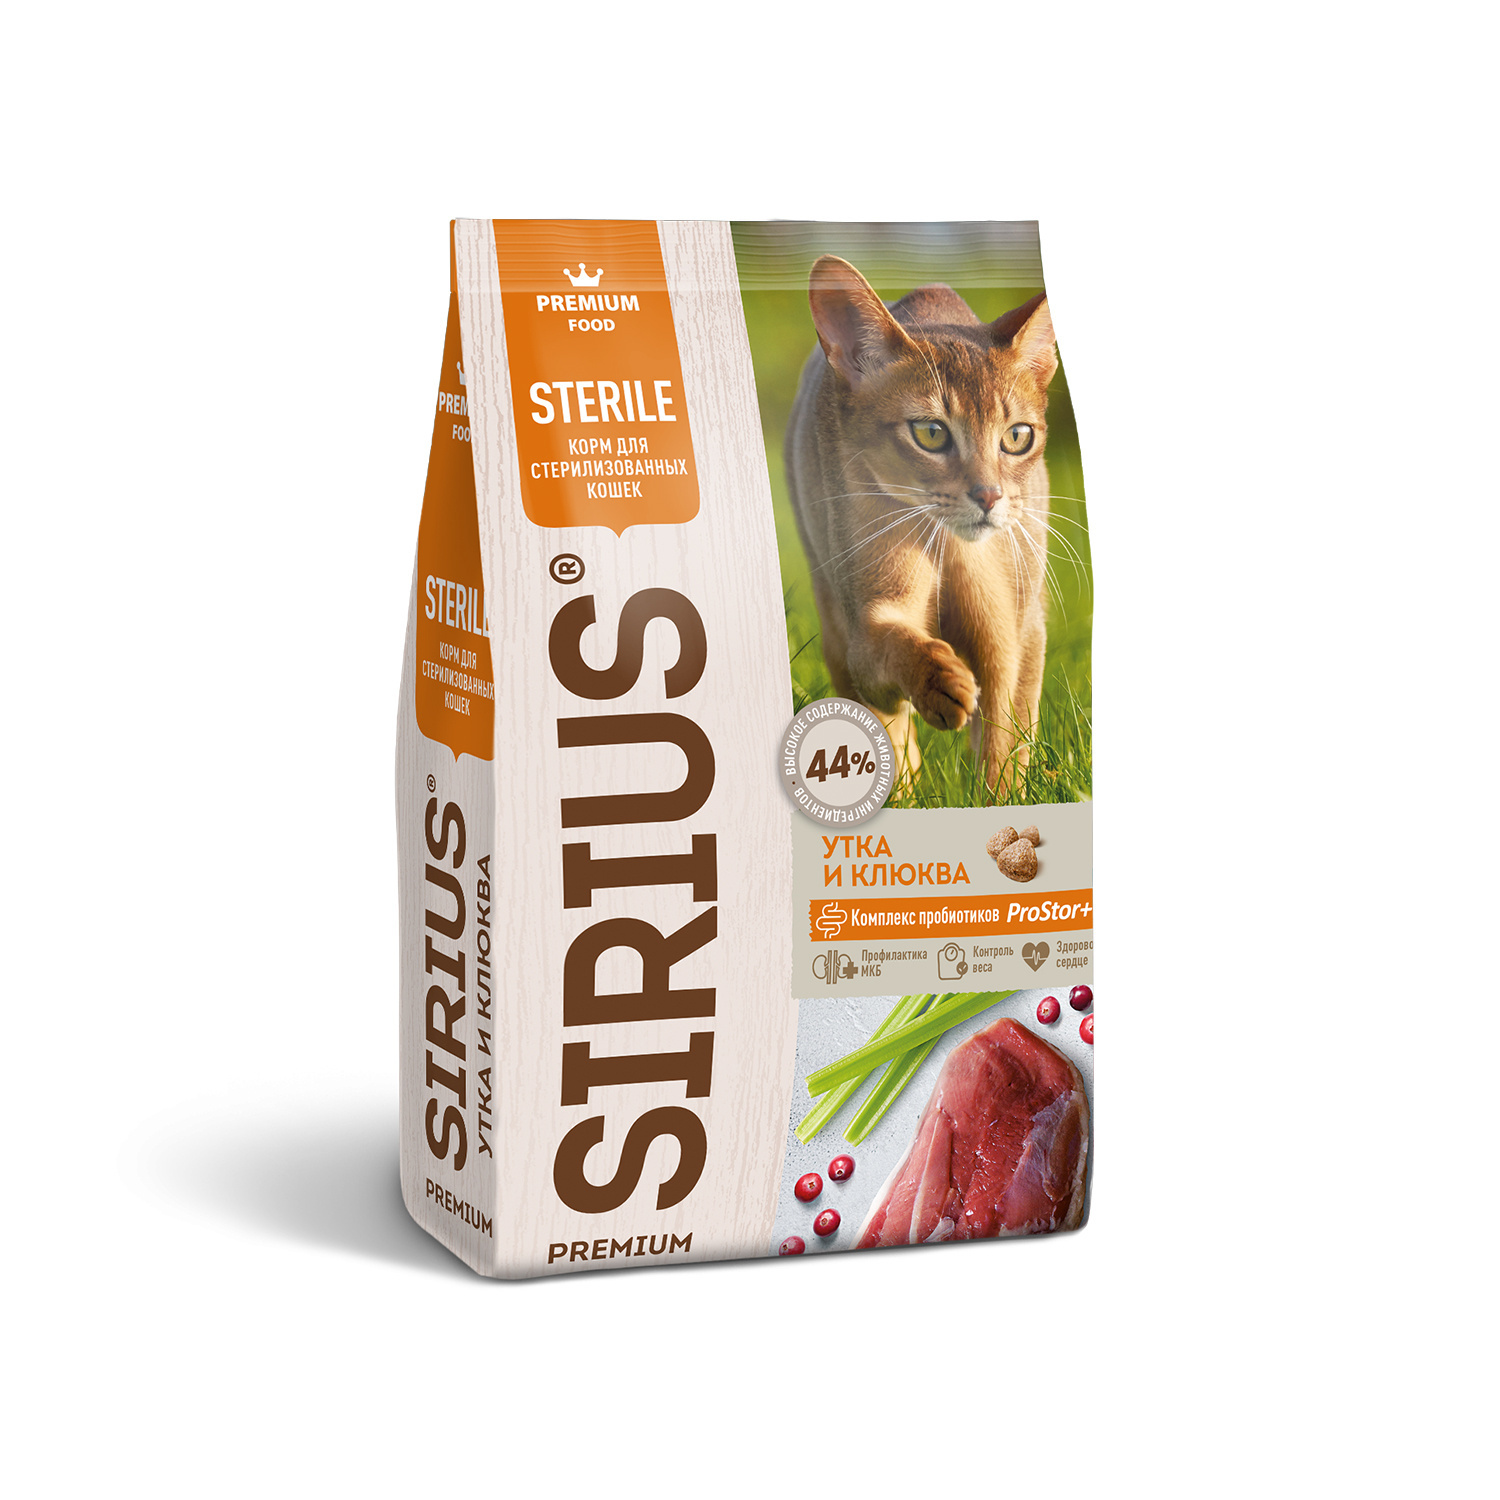 Sirius сухой корм для стерилизованных кошек, утка и клюква (400 г) Sirius сухой корм для стерилизованных кошек, утка и клюква (400 г) - фото 1